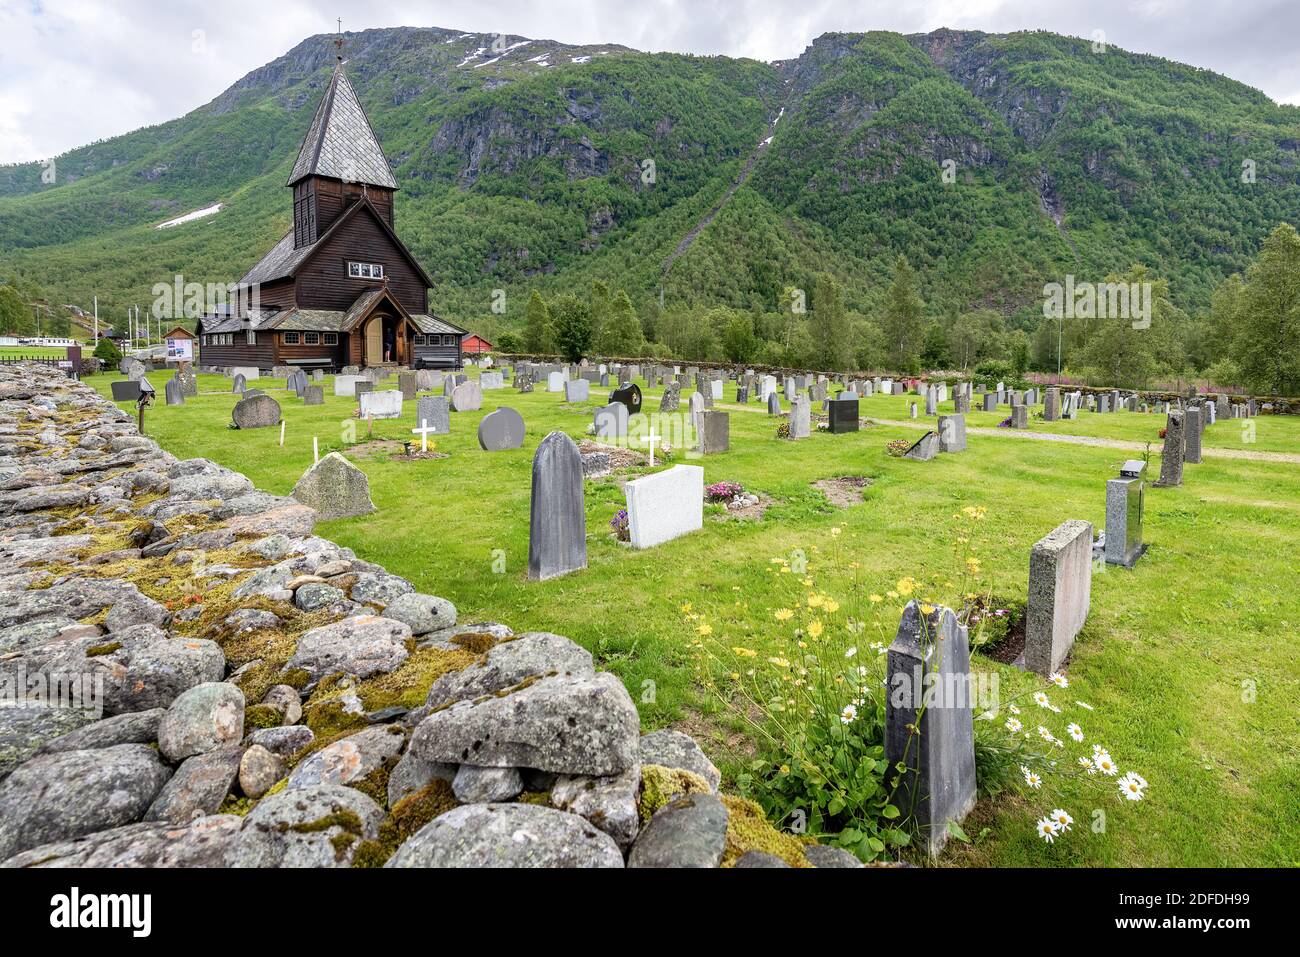 Røldal, Ullensvang, Norvegia; 18 luglio 2020 - 13 ° secolo Chiesa di legno Roldal Stave (Røldal stavkyrkje) e cimitero in un giorno nuvoloso, Odda, Hordaland Foto Stock